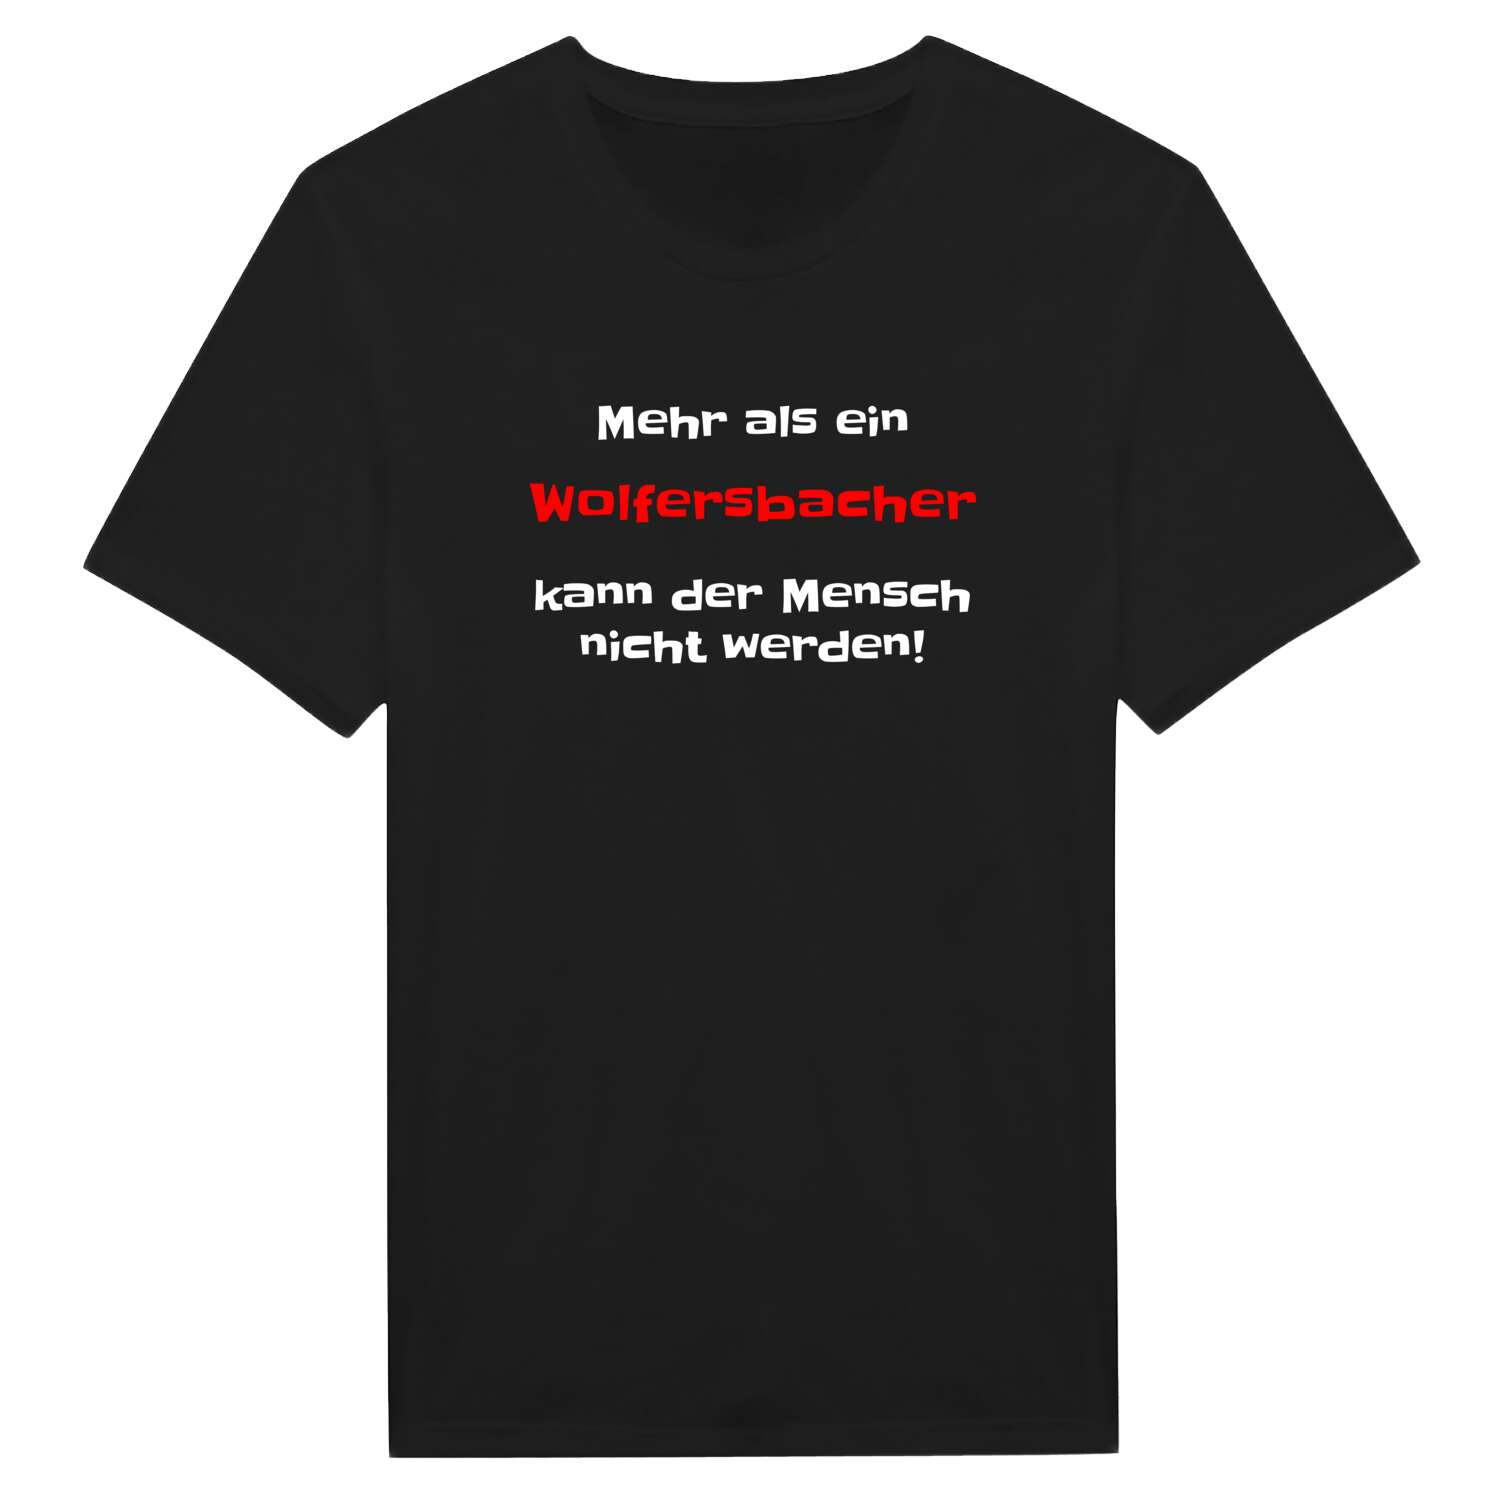 Wolfersbach T-Shirt »Mehr als ein«